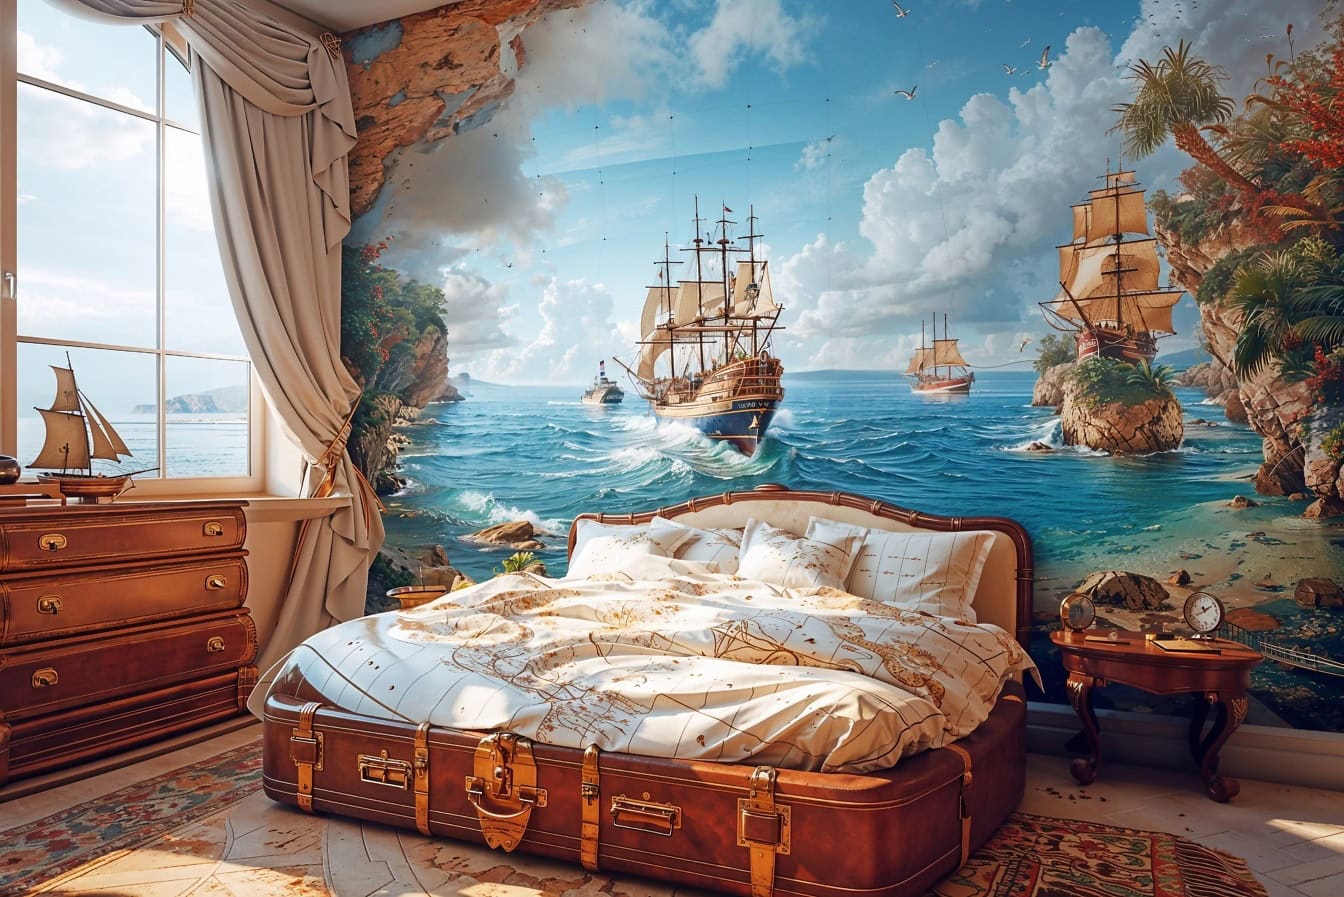 Chambre du capitaine avec un grand lit en forme de vieille valise et avec une grande fresque maritime de navires sur le mur